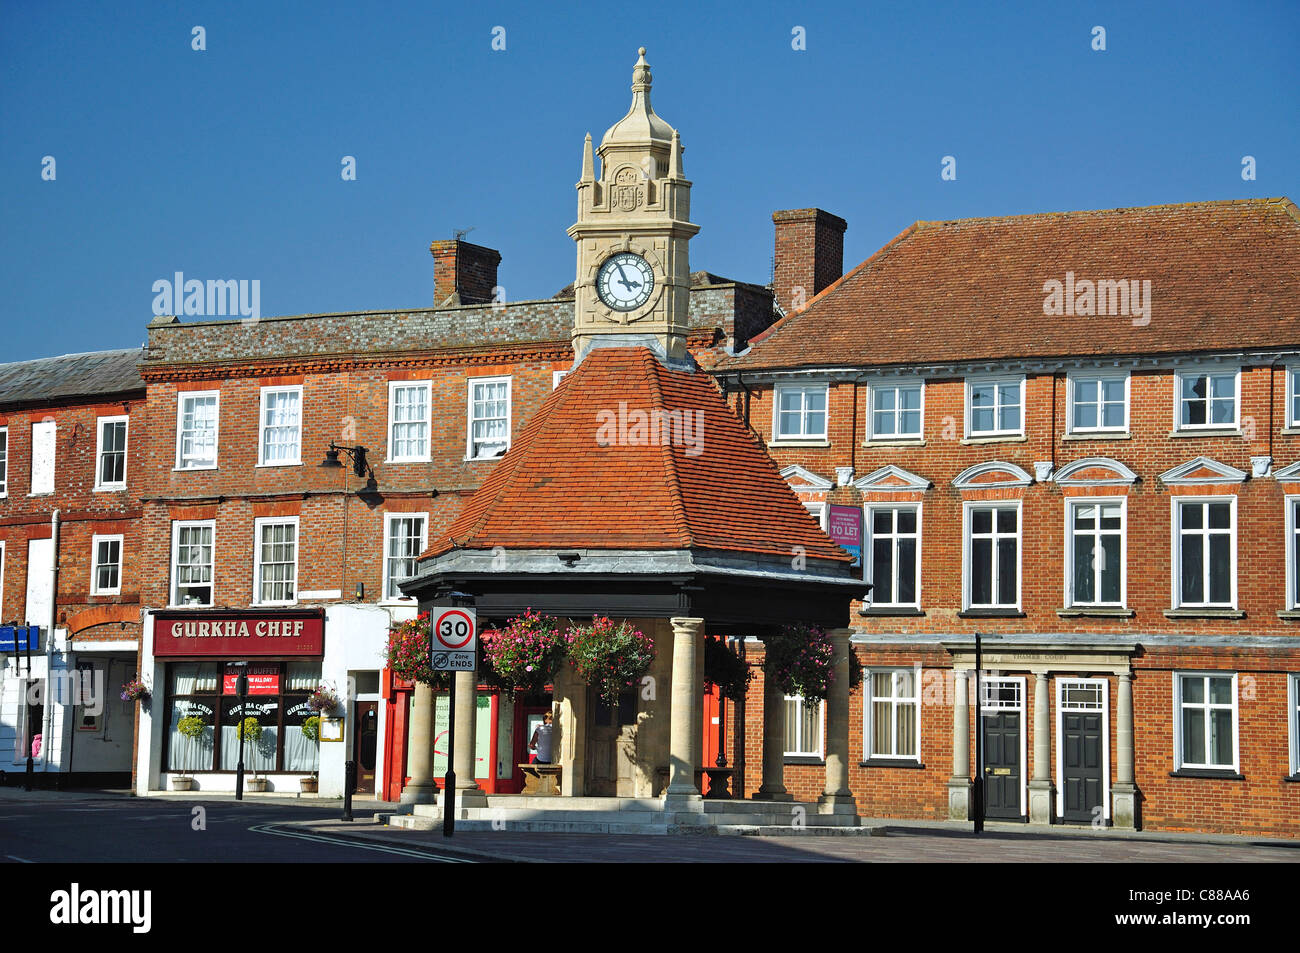 Tour de l'horloge de Newbury, le Broadway, Newbury, Berkshire, Angleterre, Royaume-Uni Banque D'Images